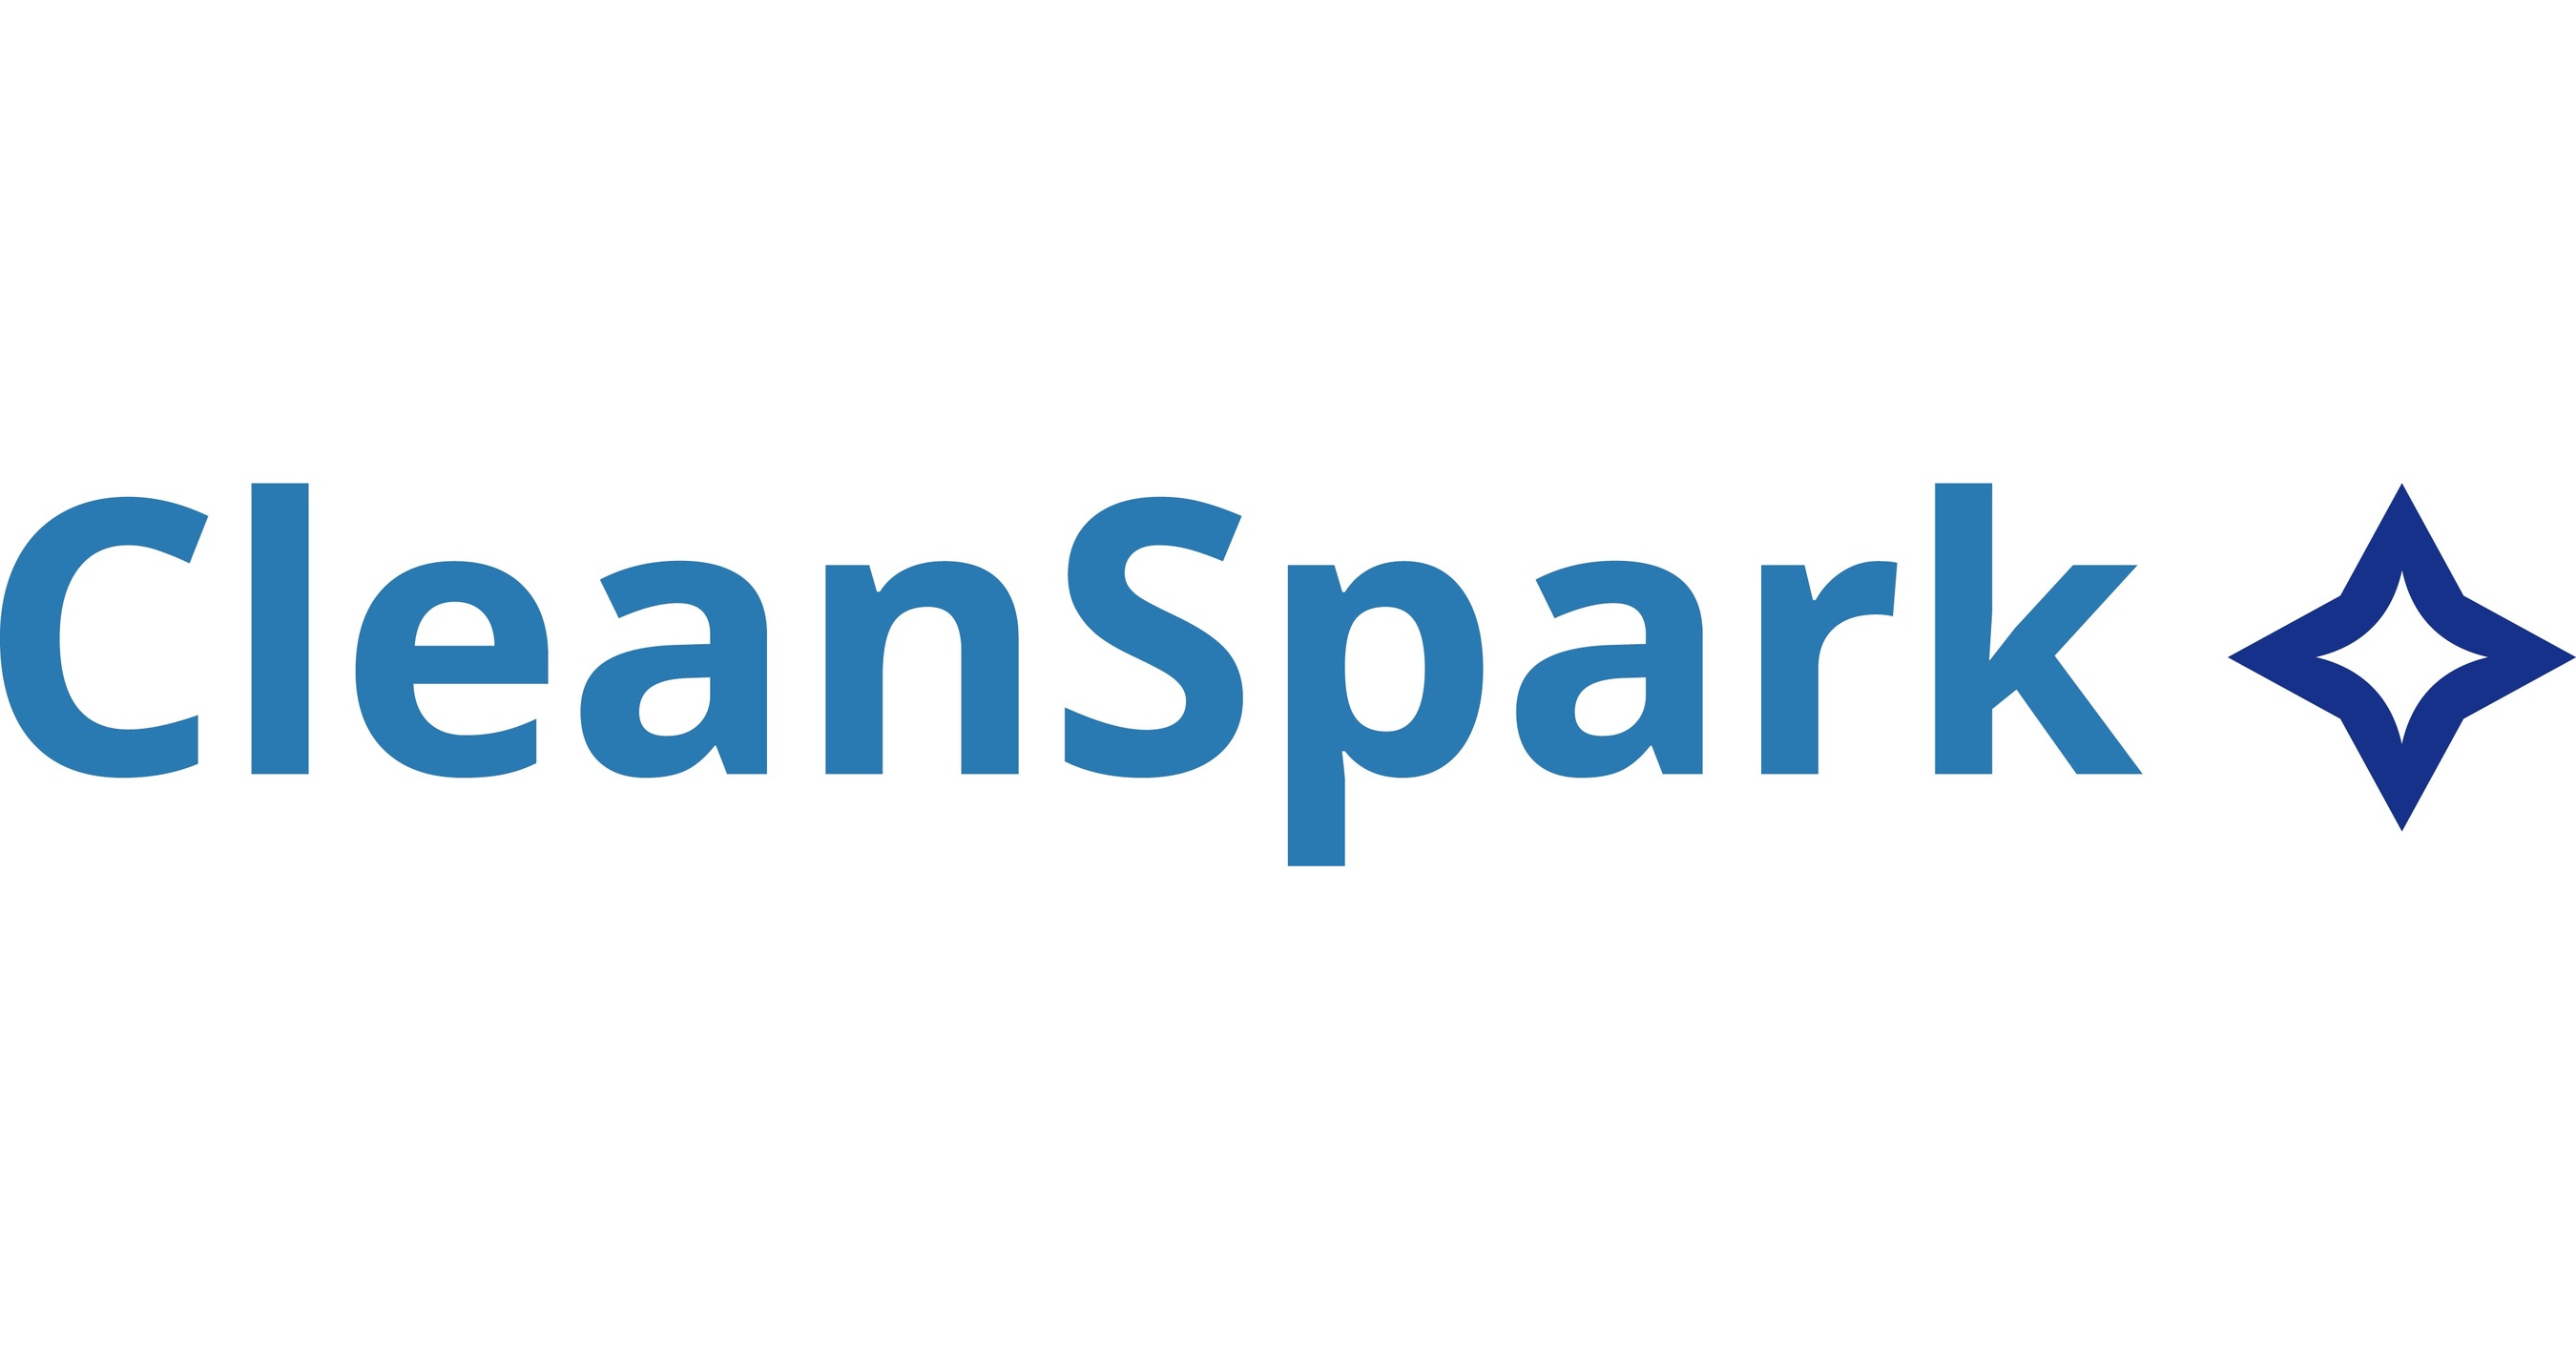 Cleanspark акции. CLEANSPARK Inc что за компания.